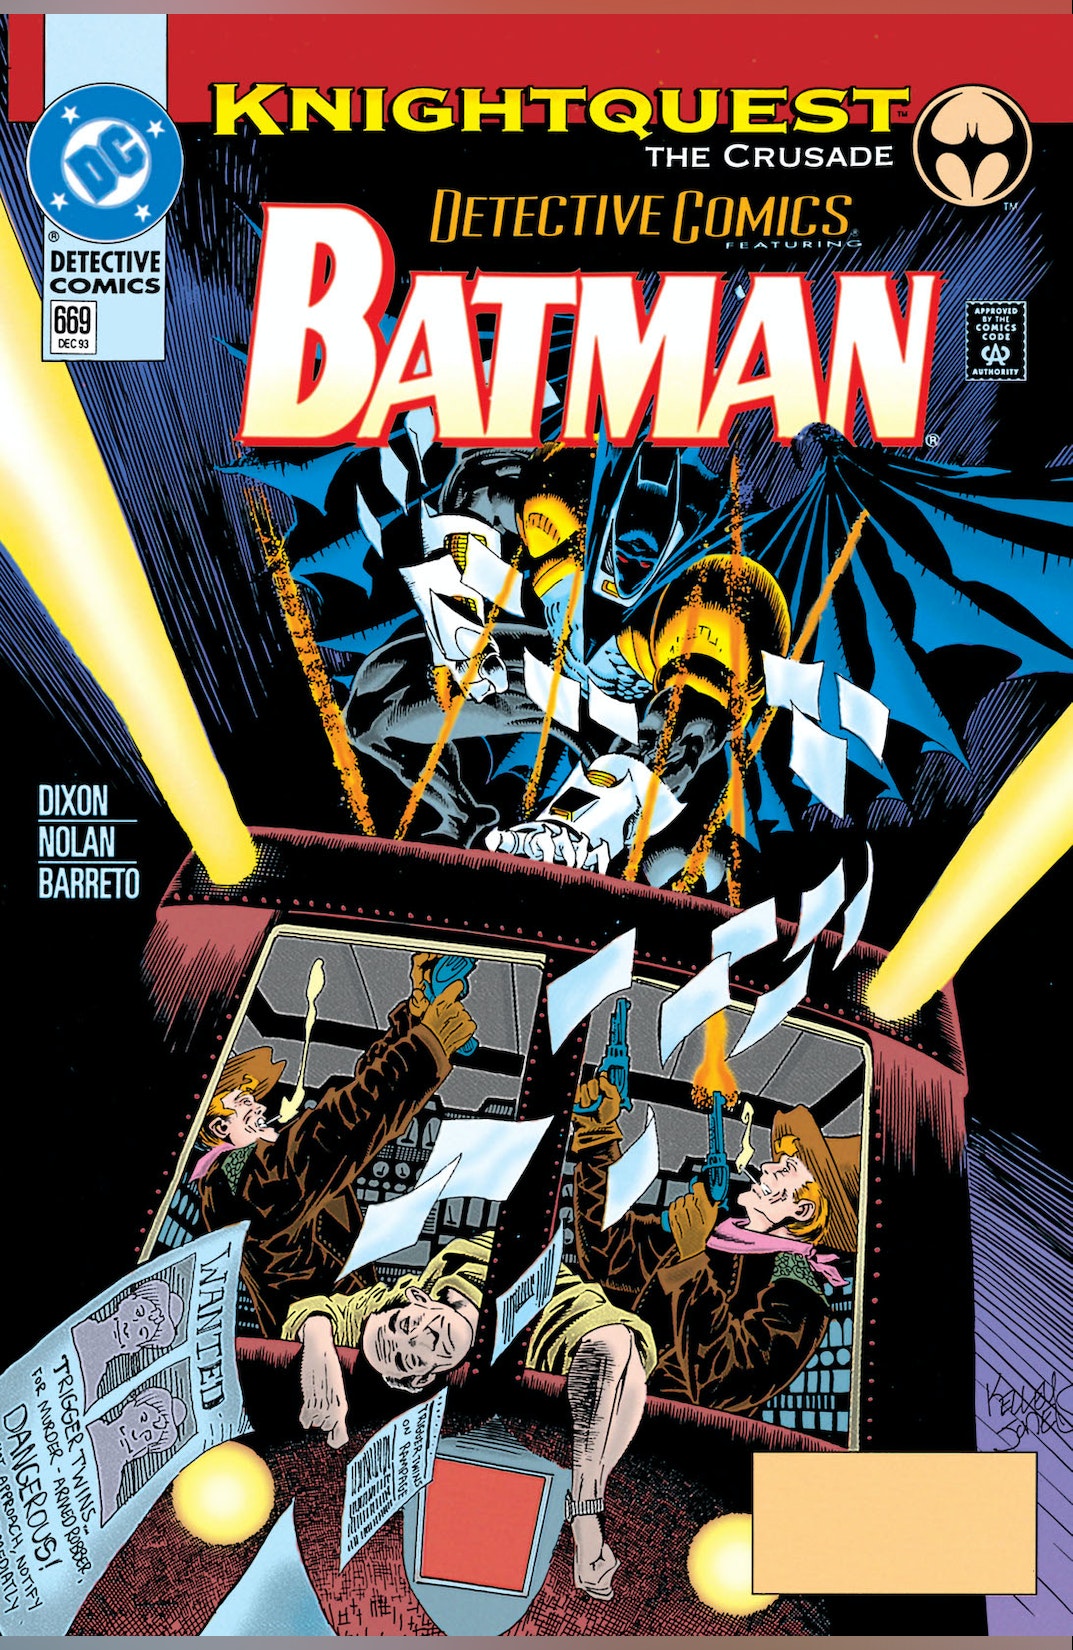 Detective Comics #669